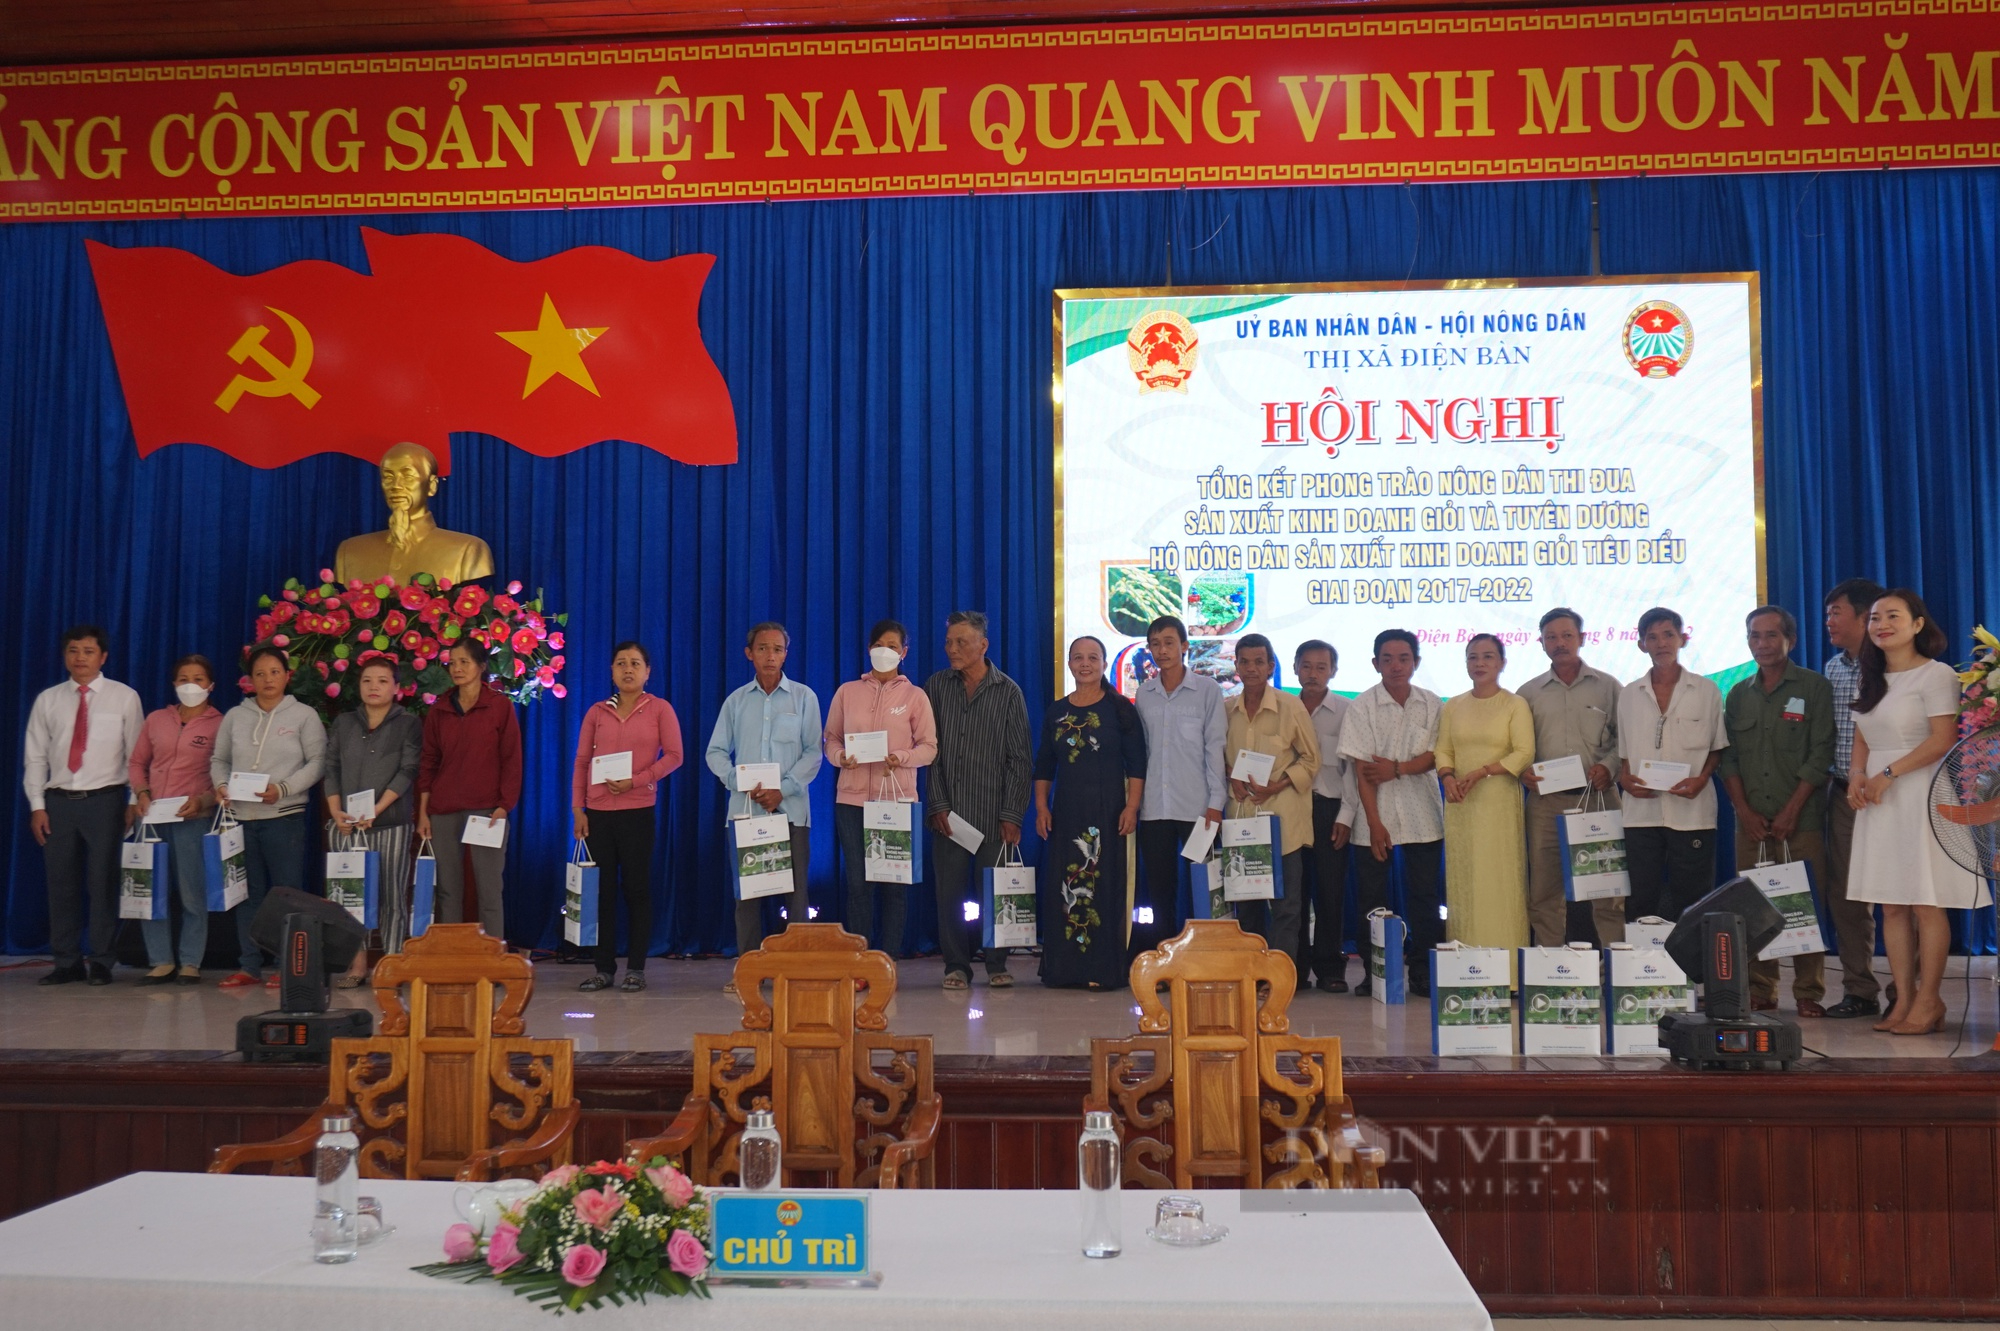 Quảng Nam: Phong trào Nông dân sản xuất kinh doanh giỏi góp phần giúp Điện Bàn chuyển dịch cơ cấu kinh tế nhanh, bền vững - Ảnh 9.